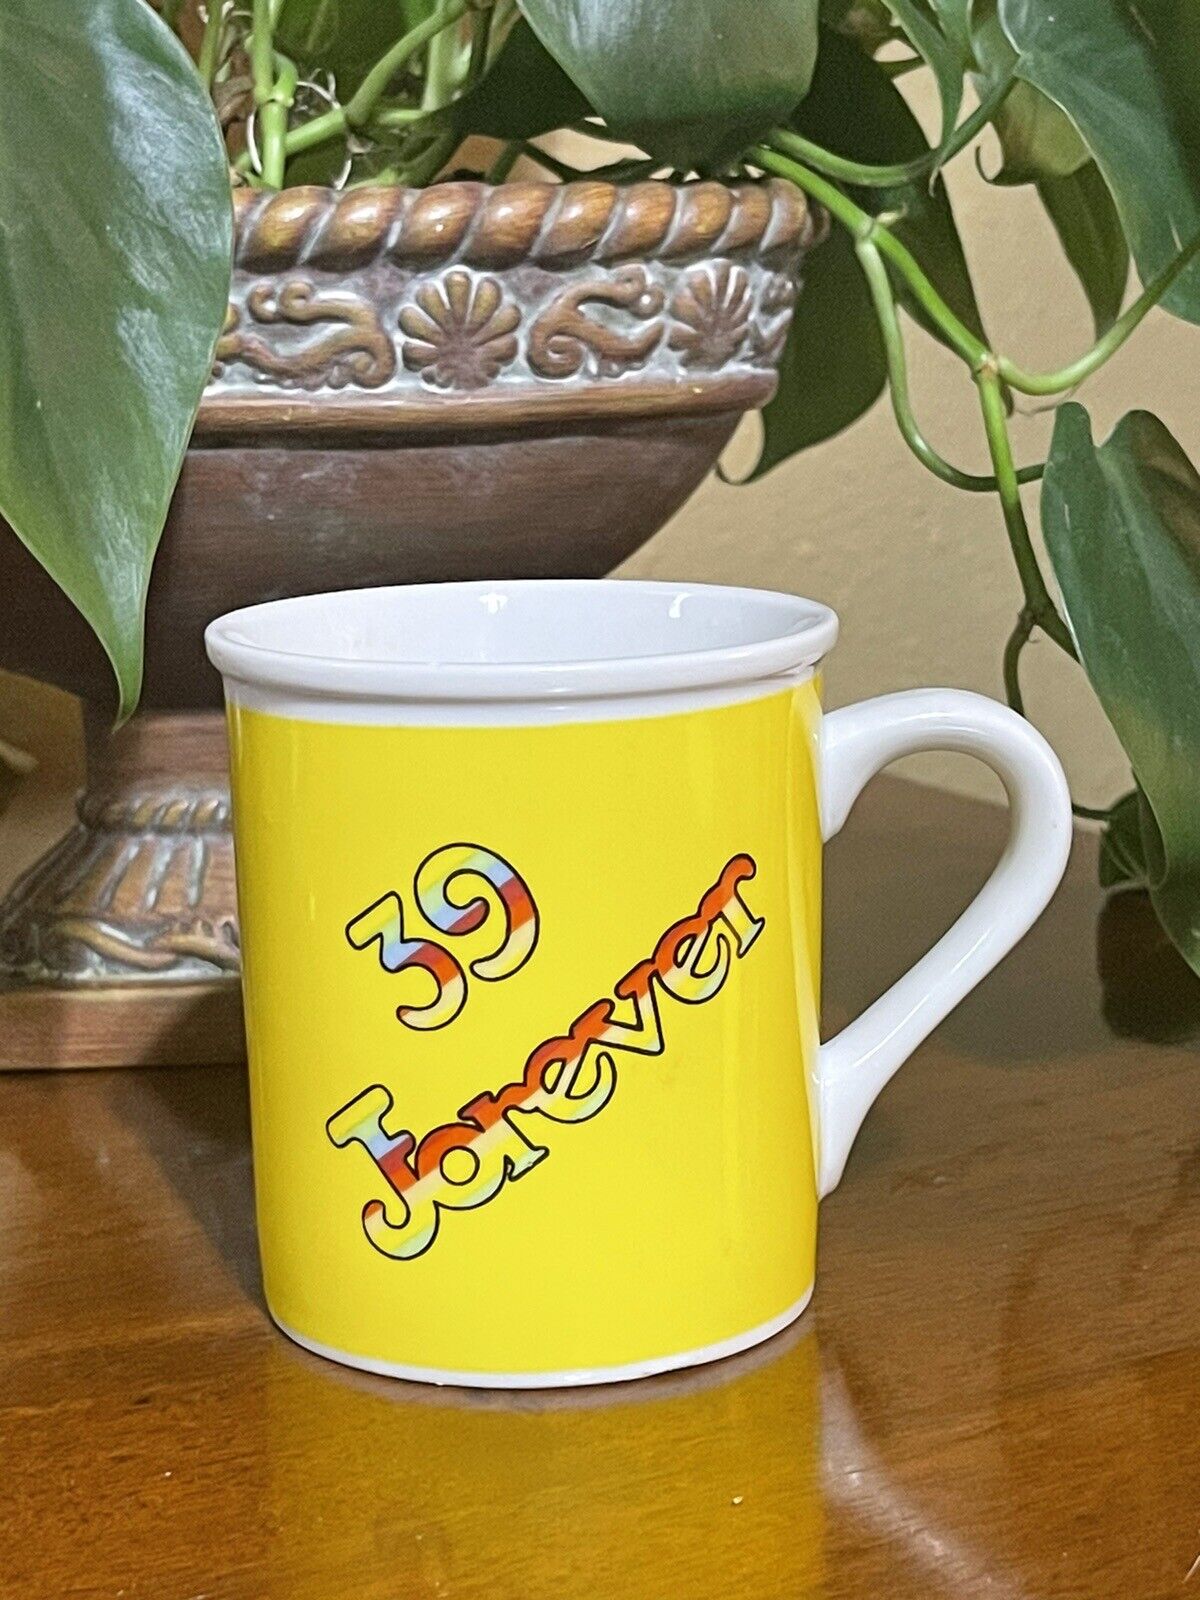 39 Forever Coffee ☕ Tea 🍵 Mug Rare VTG 1985